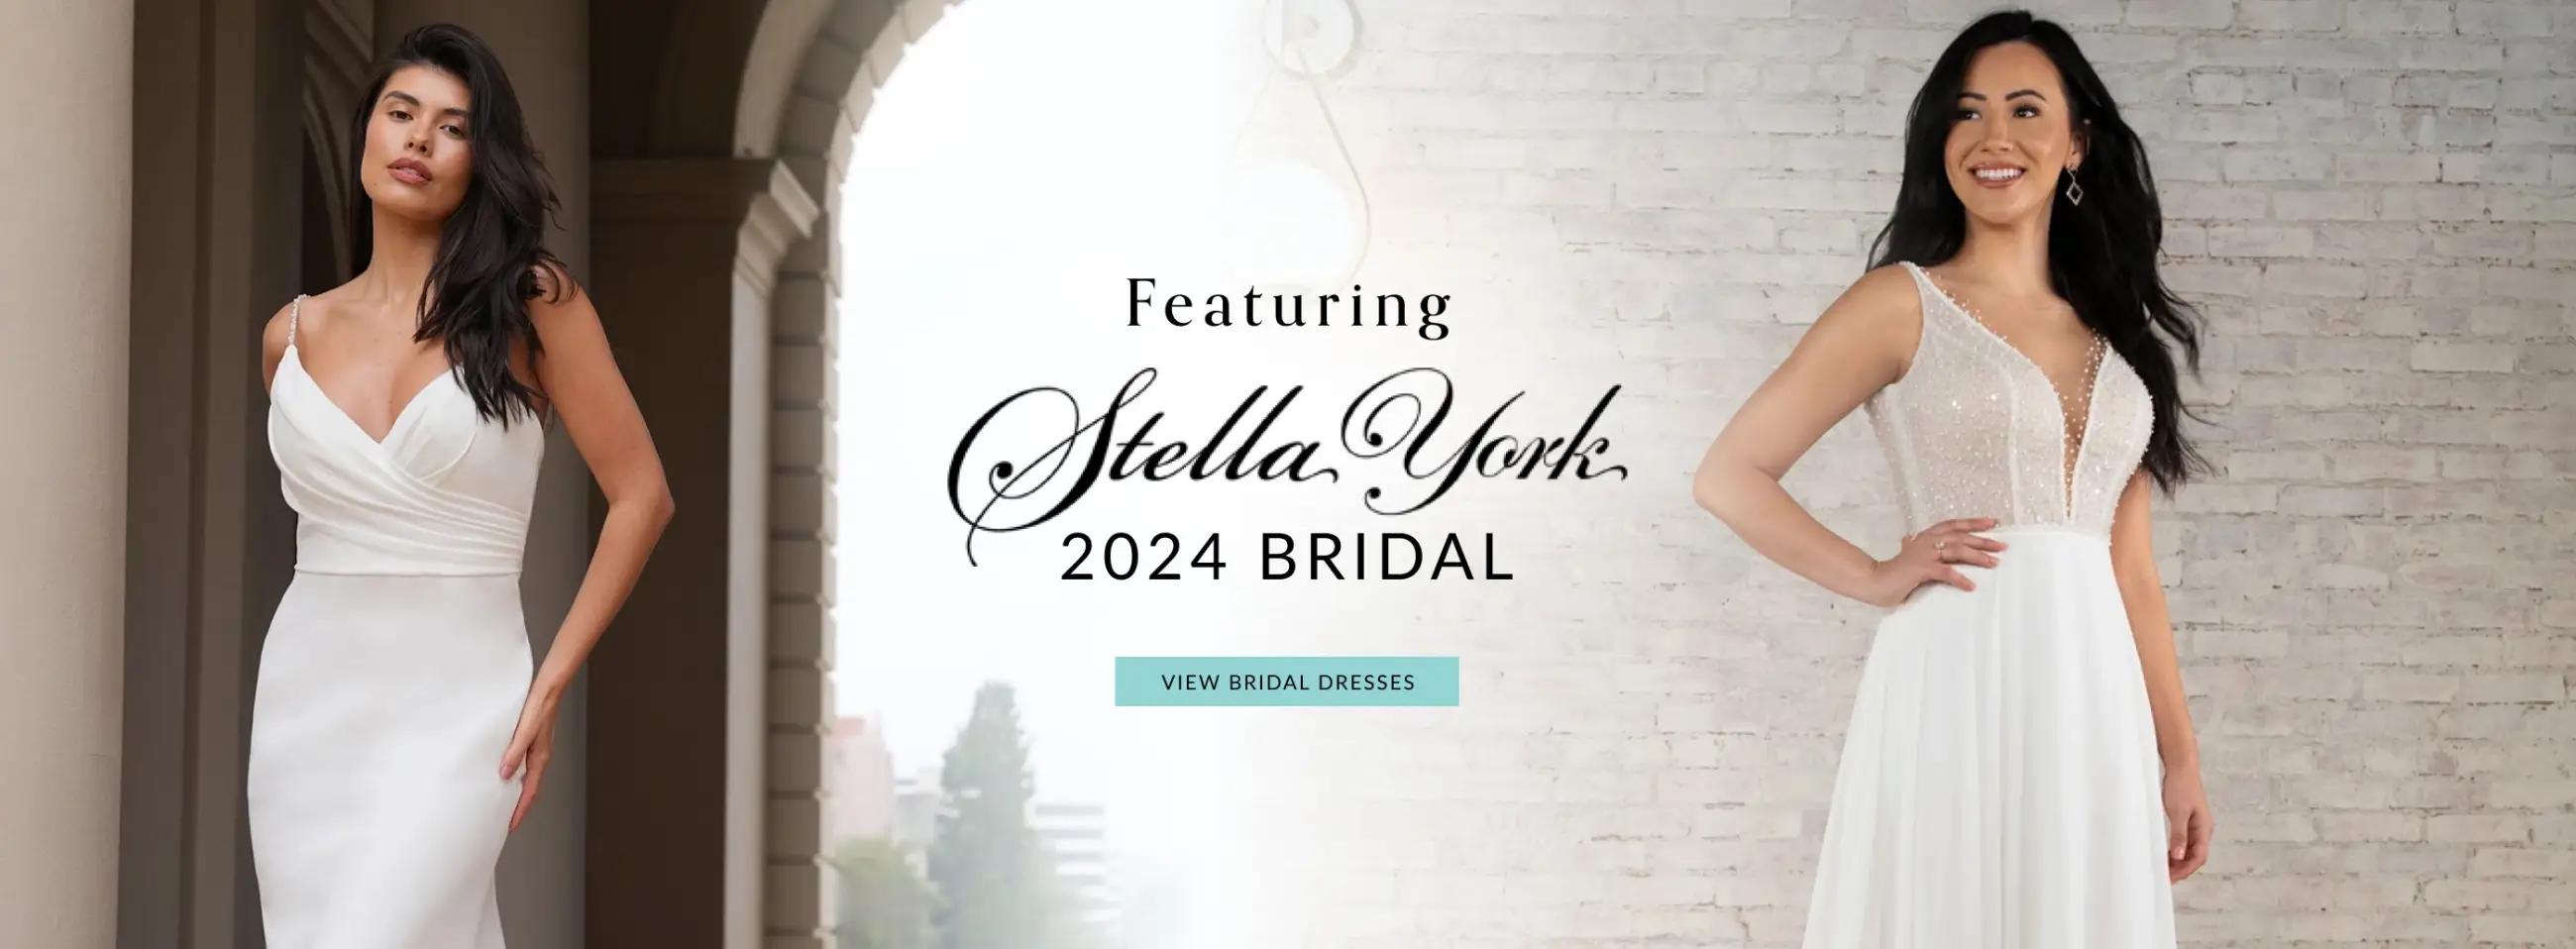 Desktop Featuring Stella York 2024 Bridal Banner